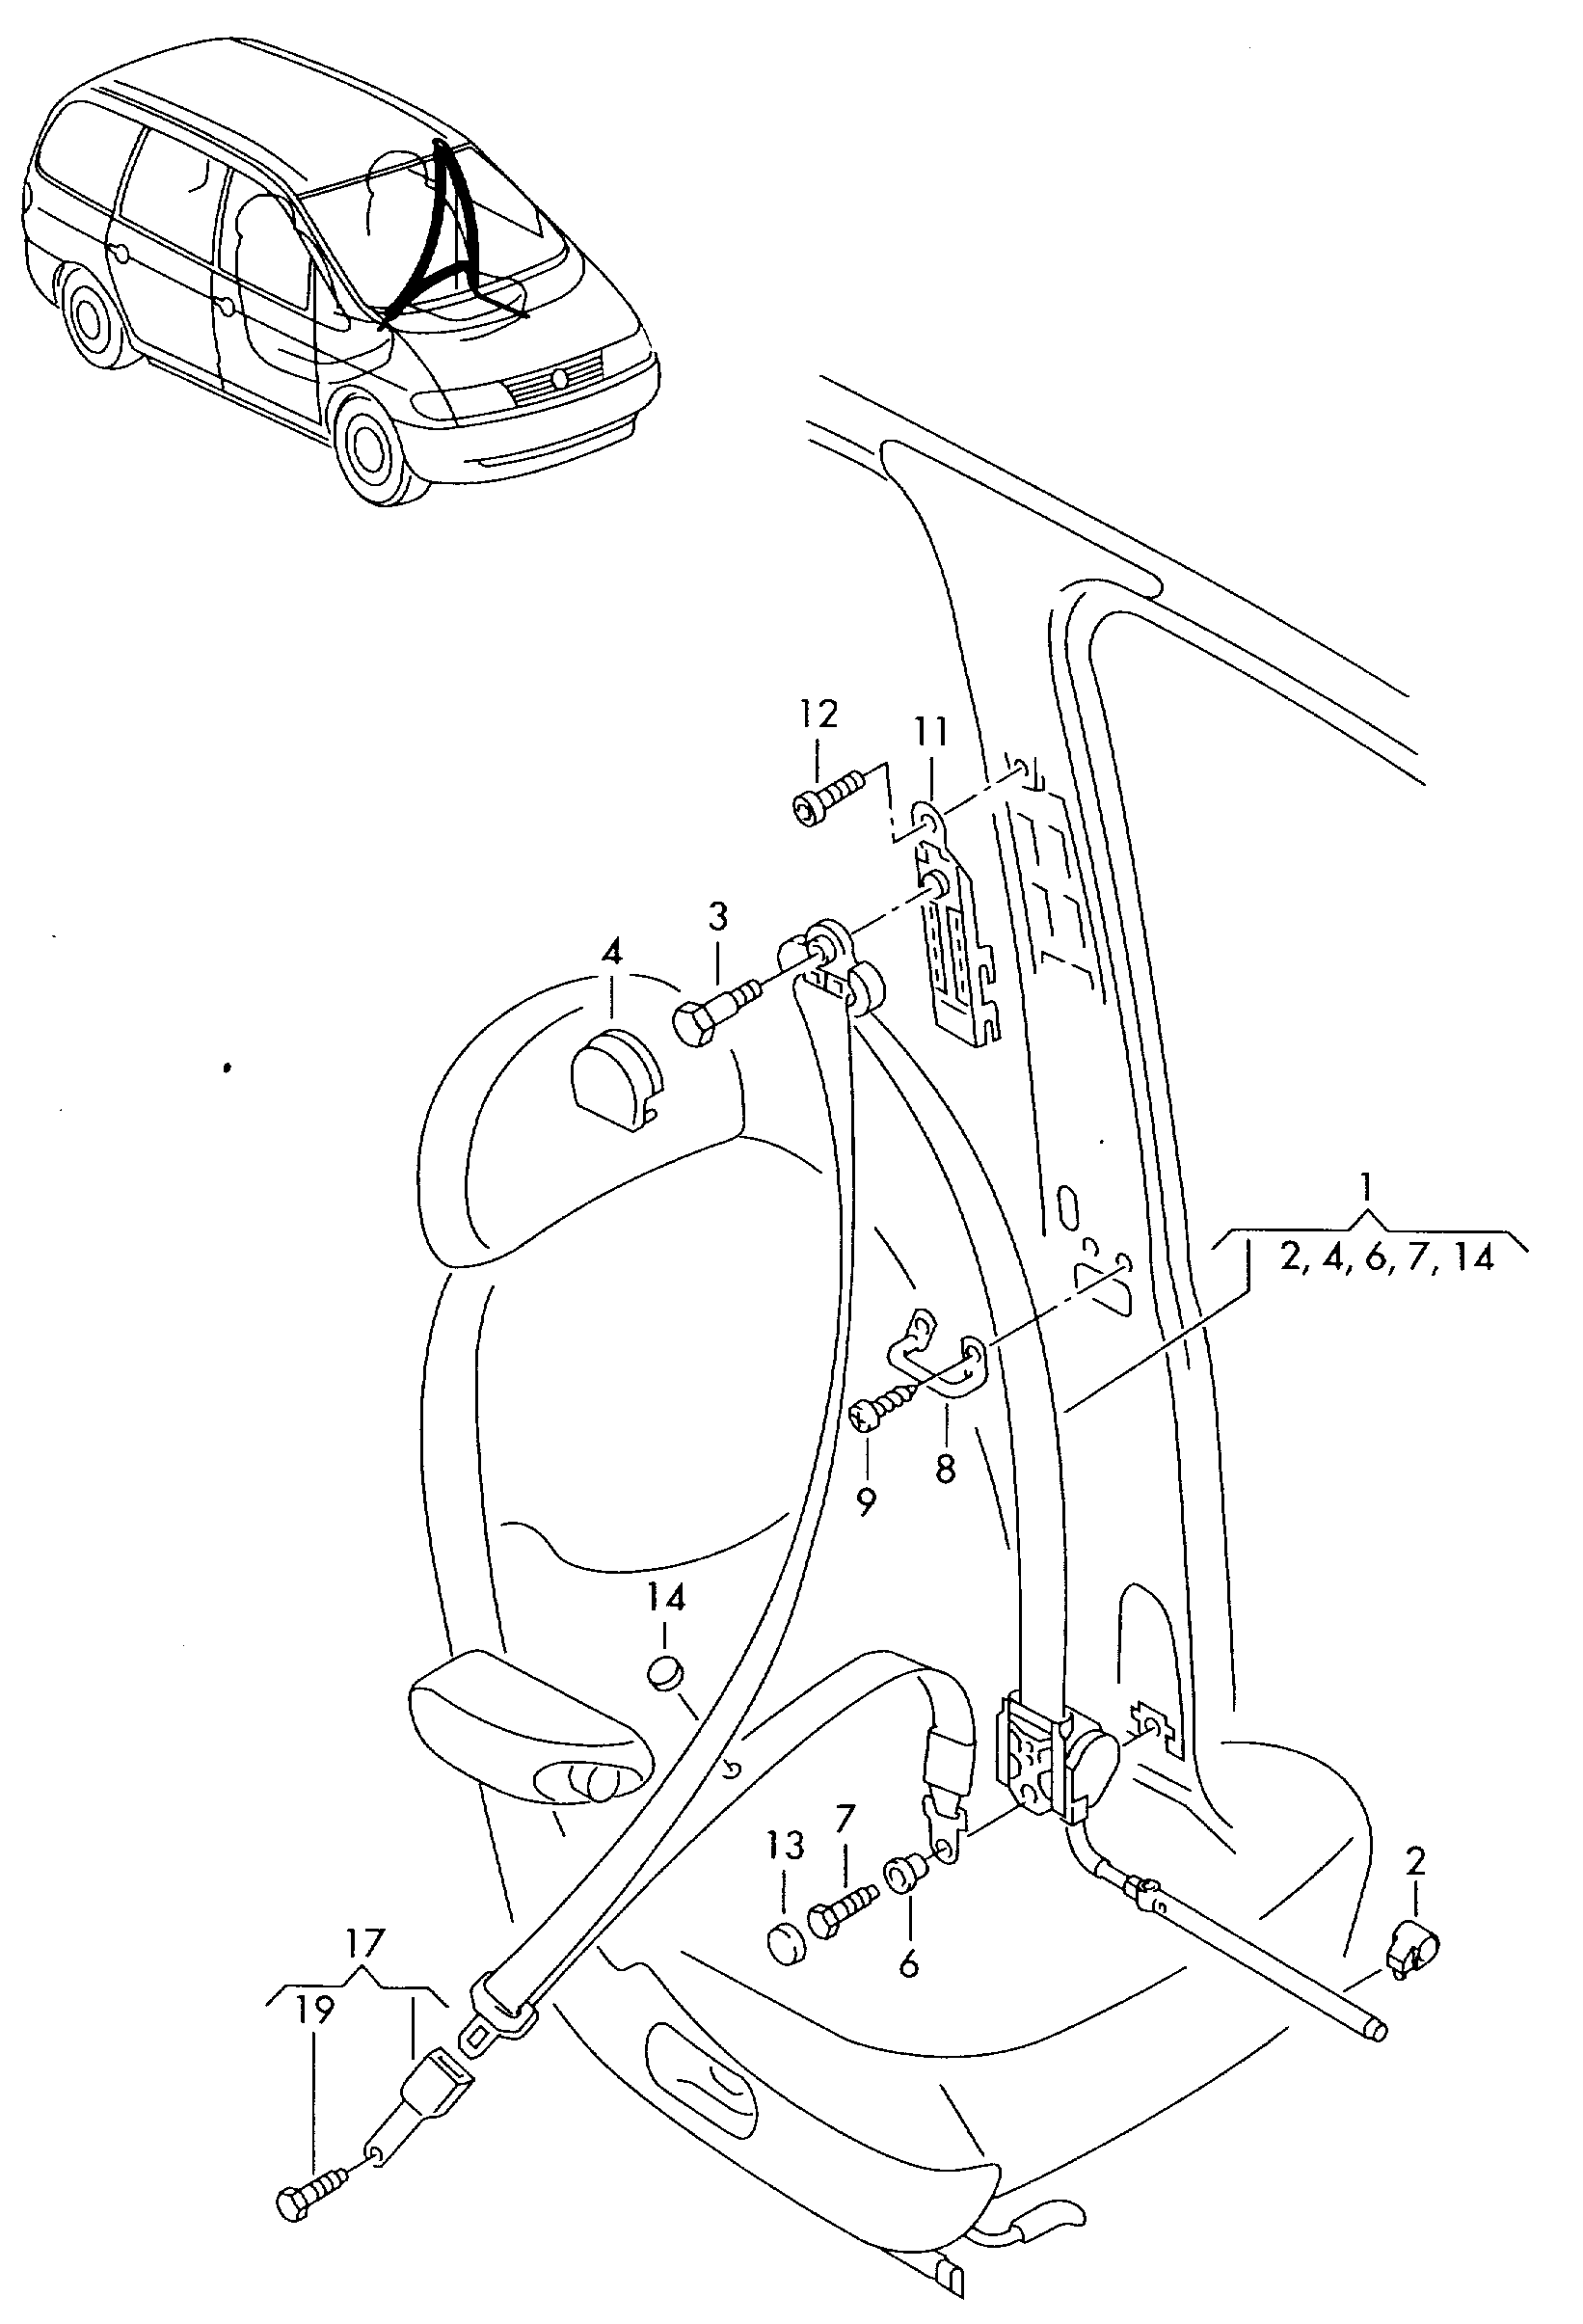 ceintures de securite dans
compartiment-passagers - Alhambra(AL)  